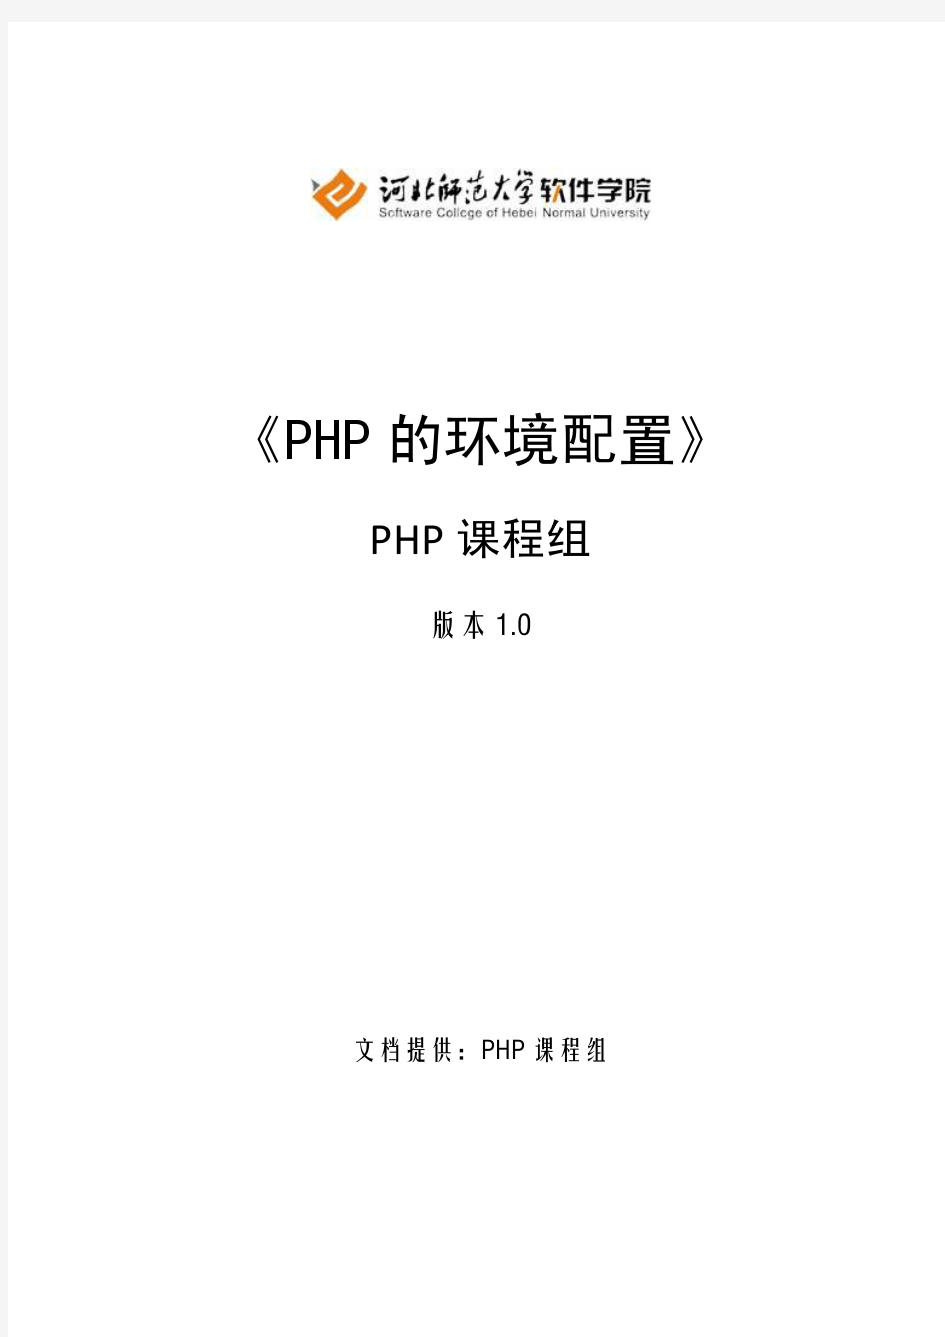 PHPManual_1